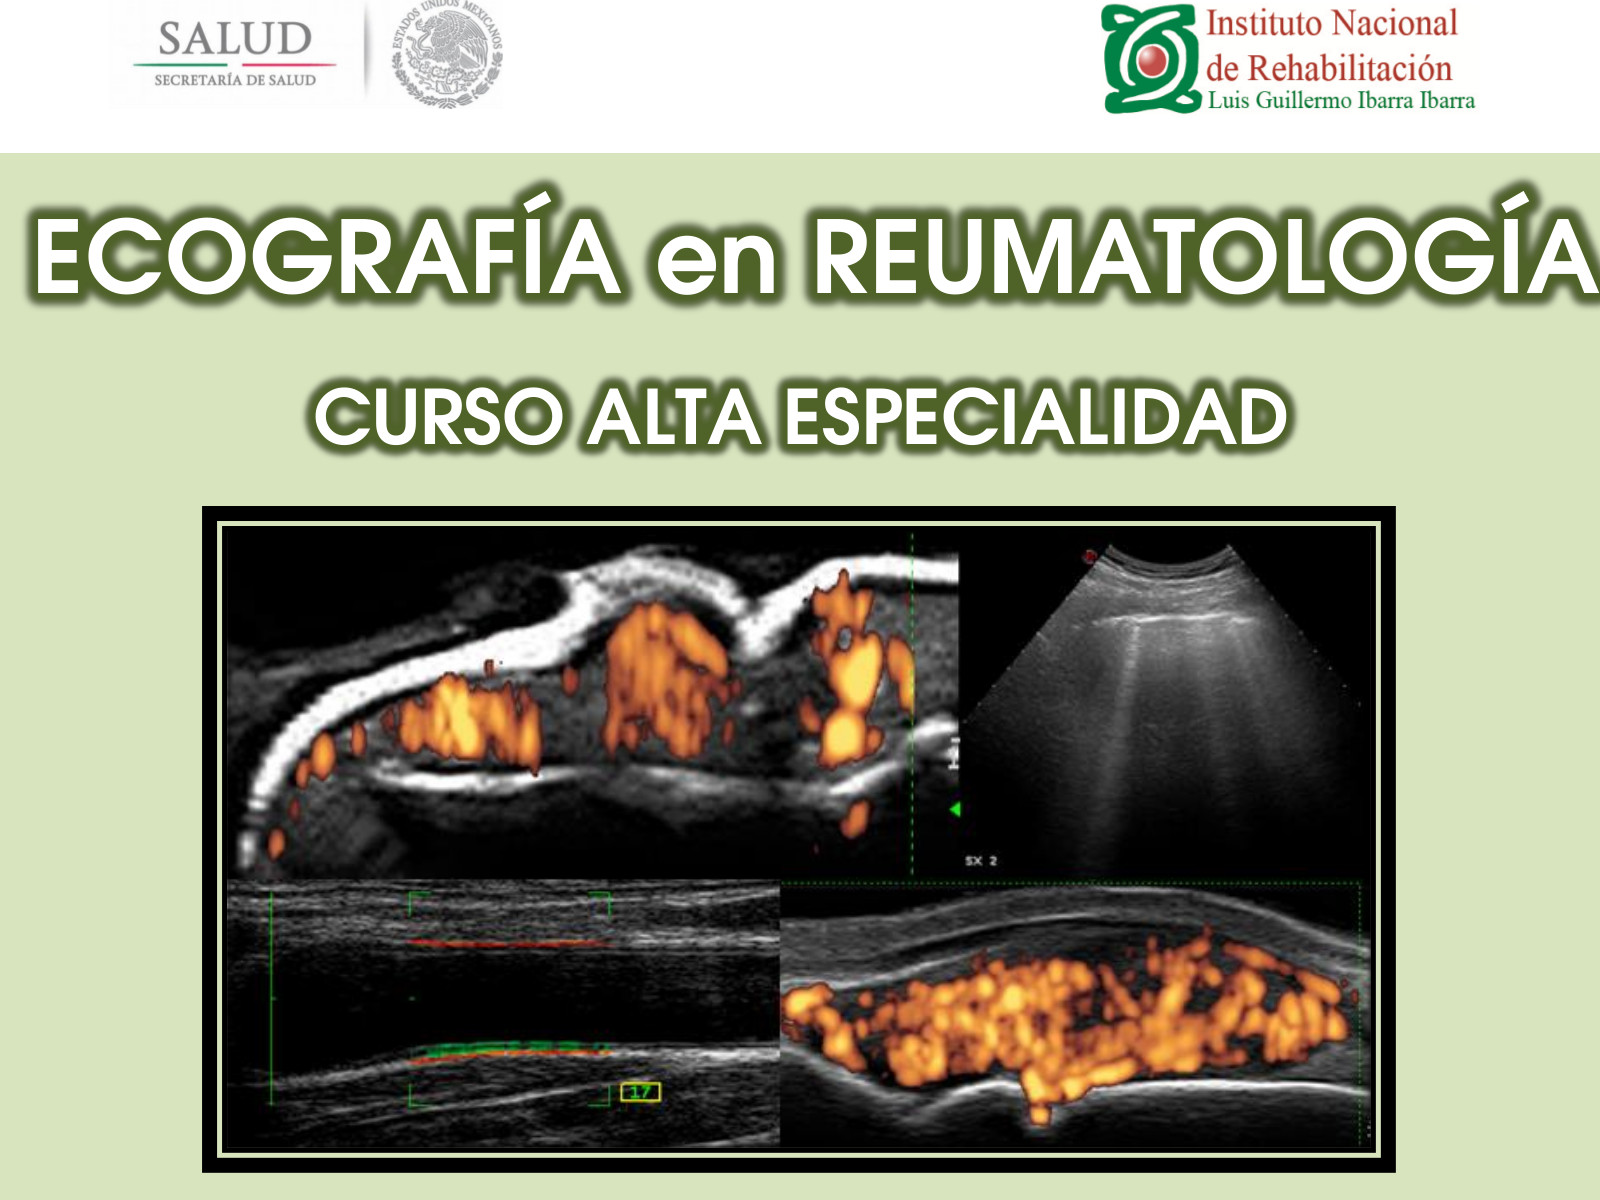 Curso de Alta Especialidad de Ecografía en Reumatología, impartido por el INR